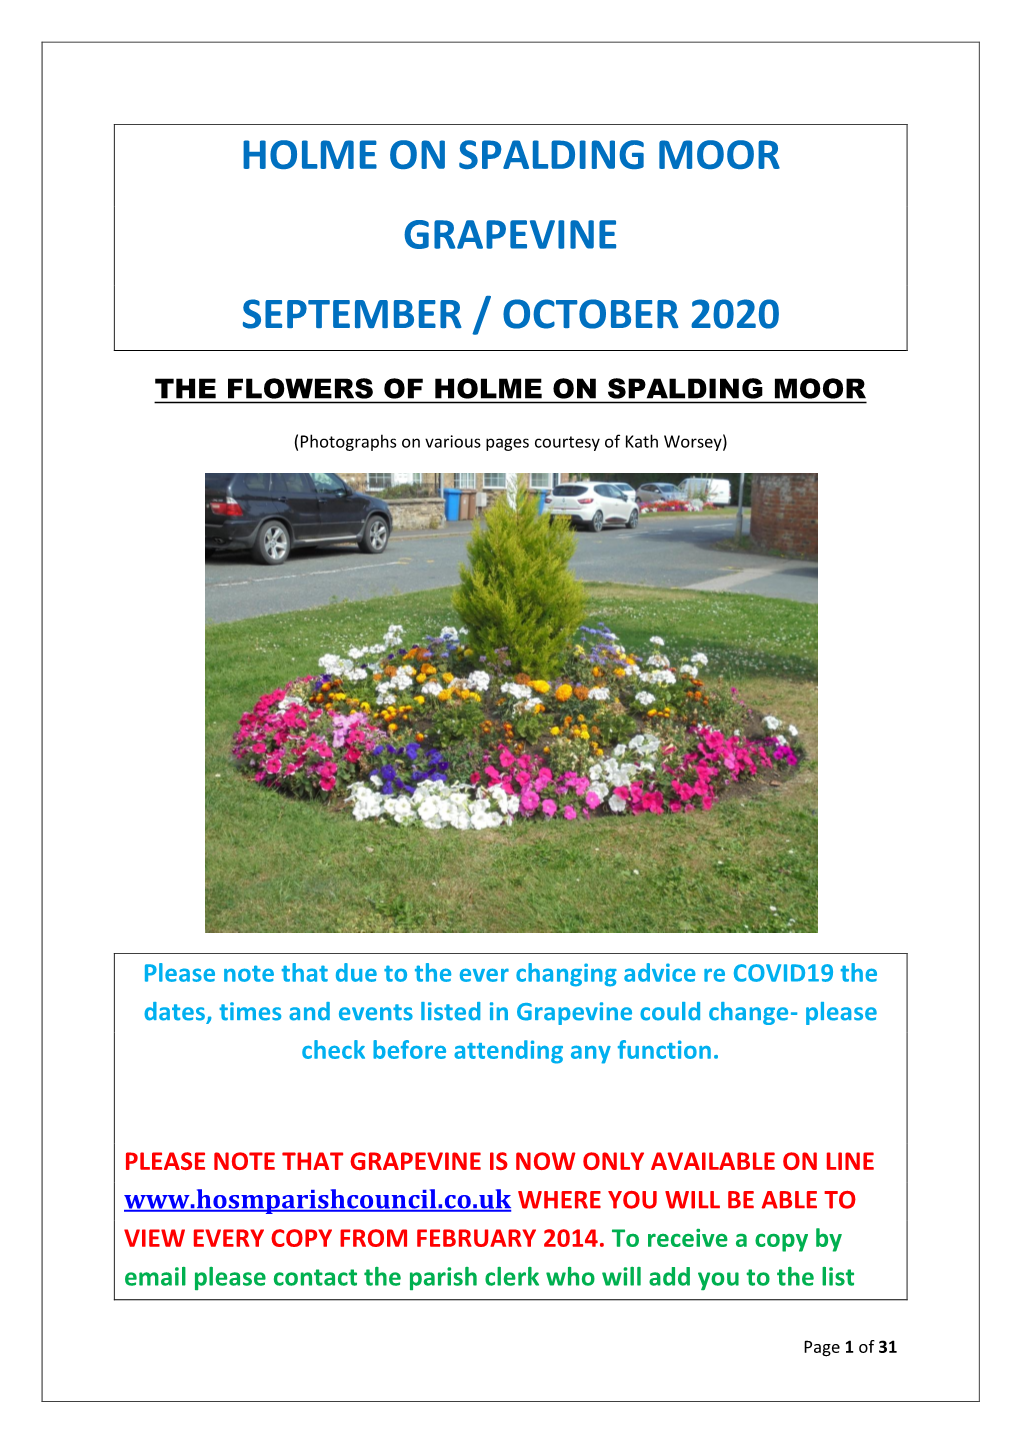 Holme on Spalding Moor Grapevine September / October 2020